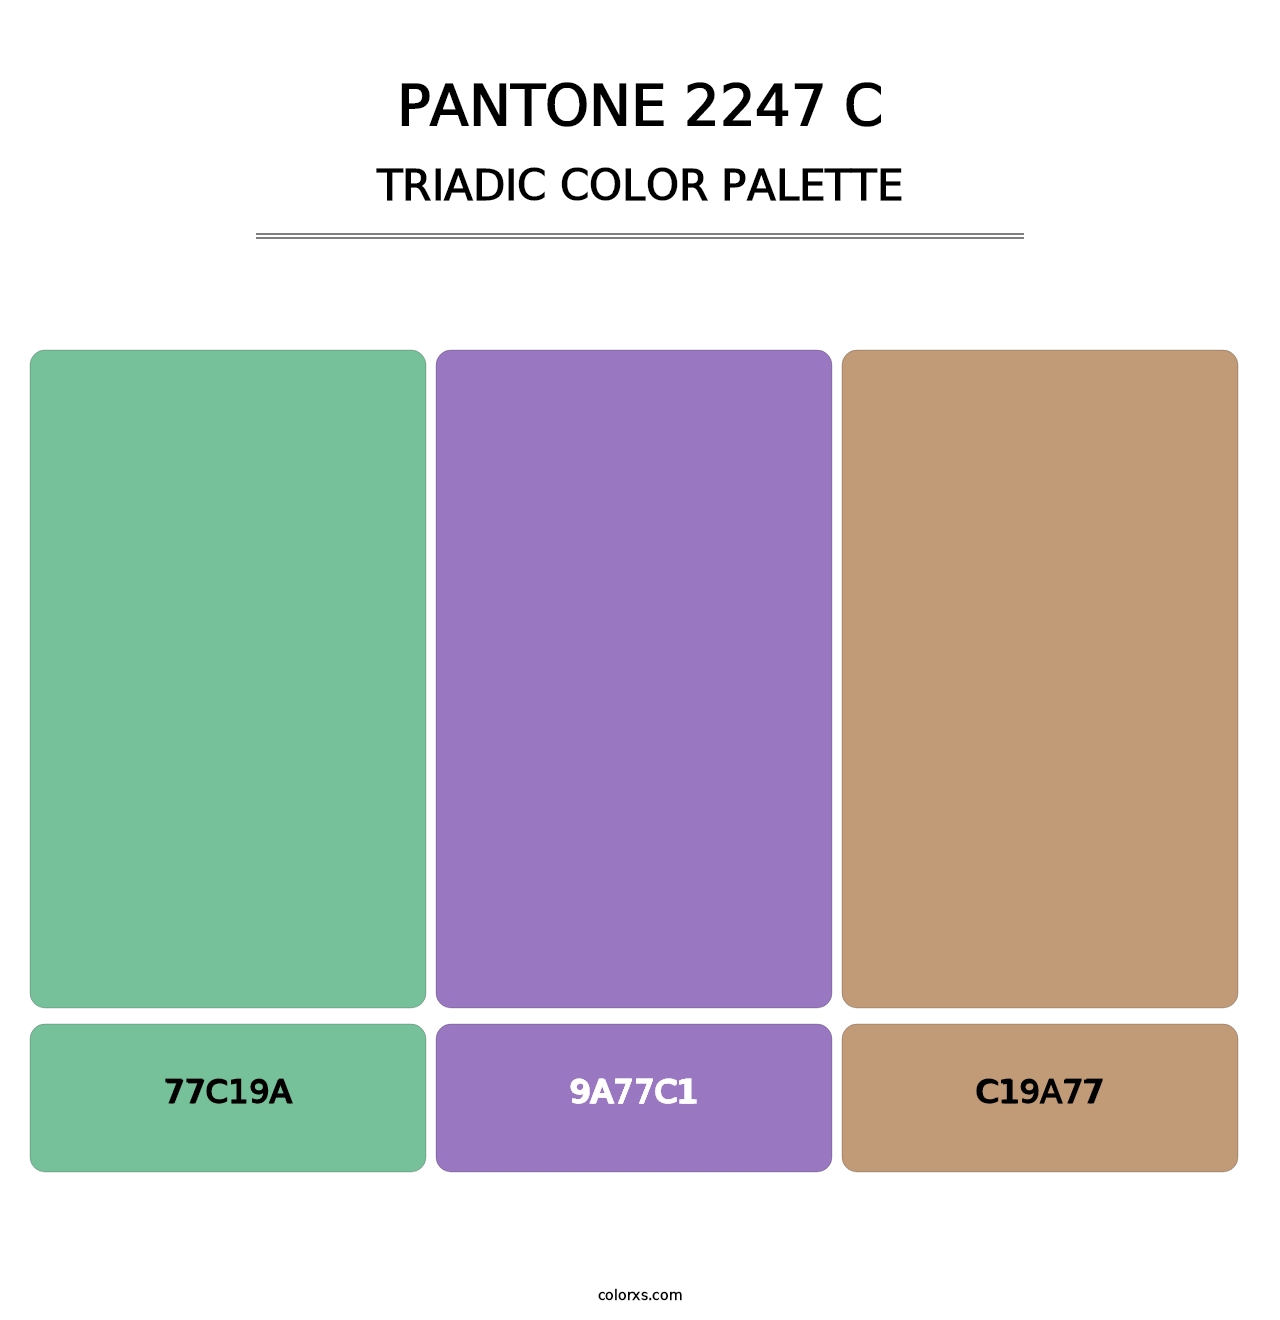 PANTONE 2247 C - Triadic Color Palette